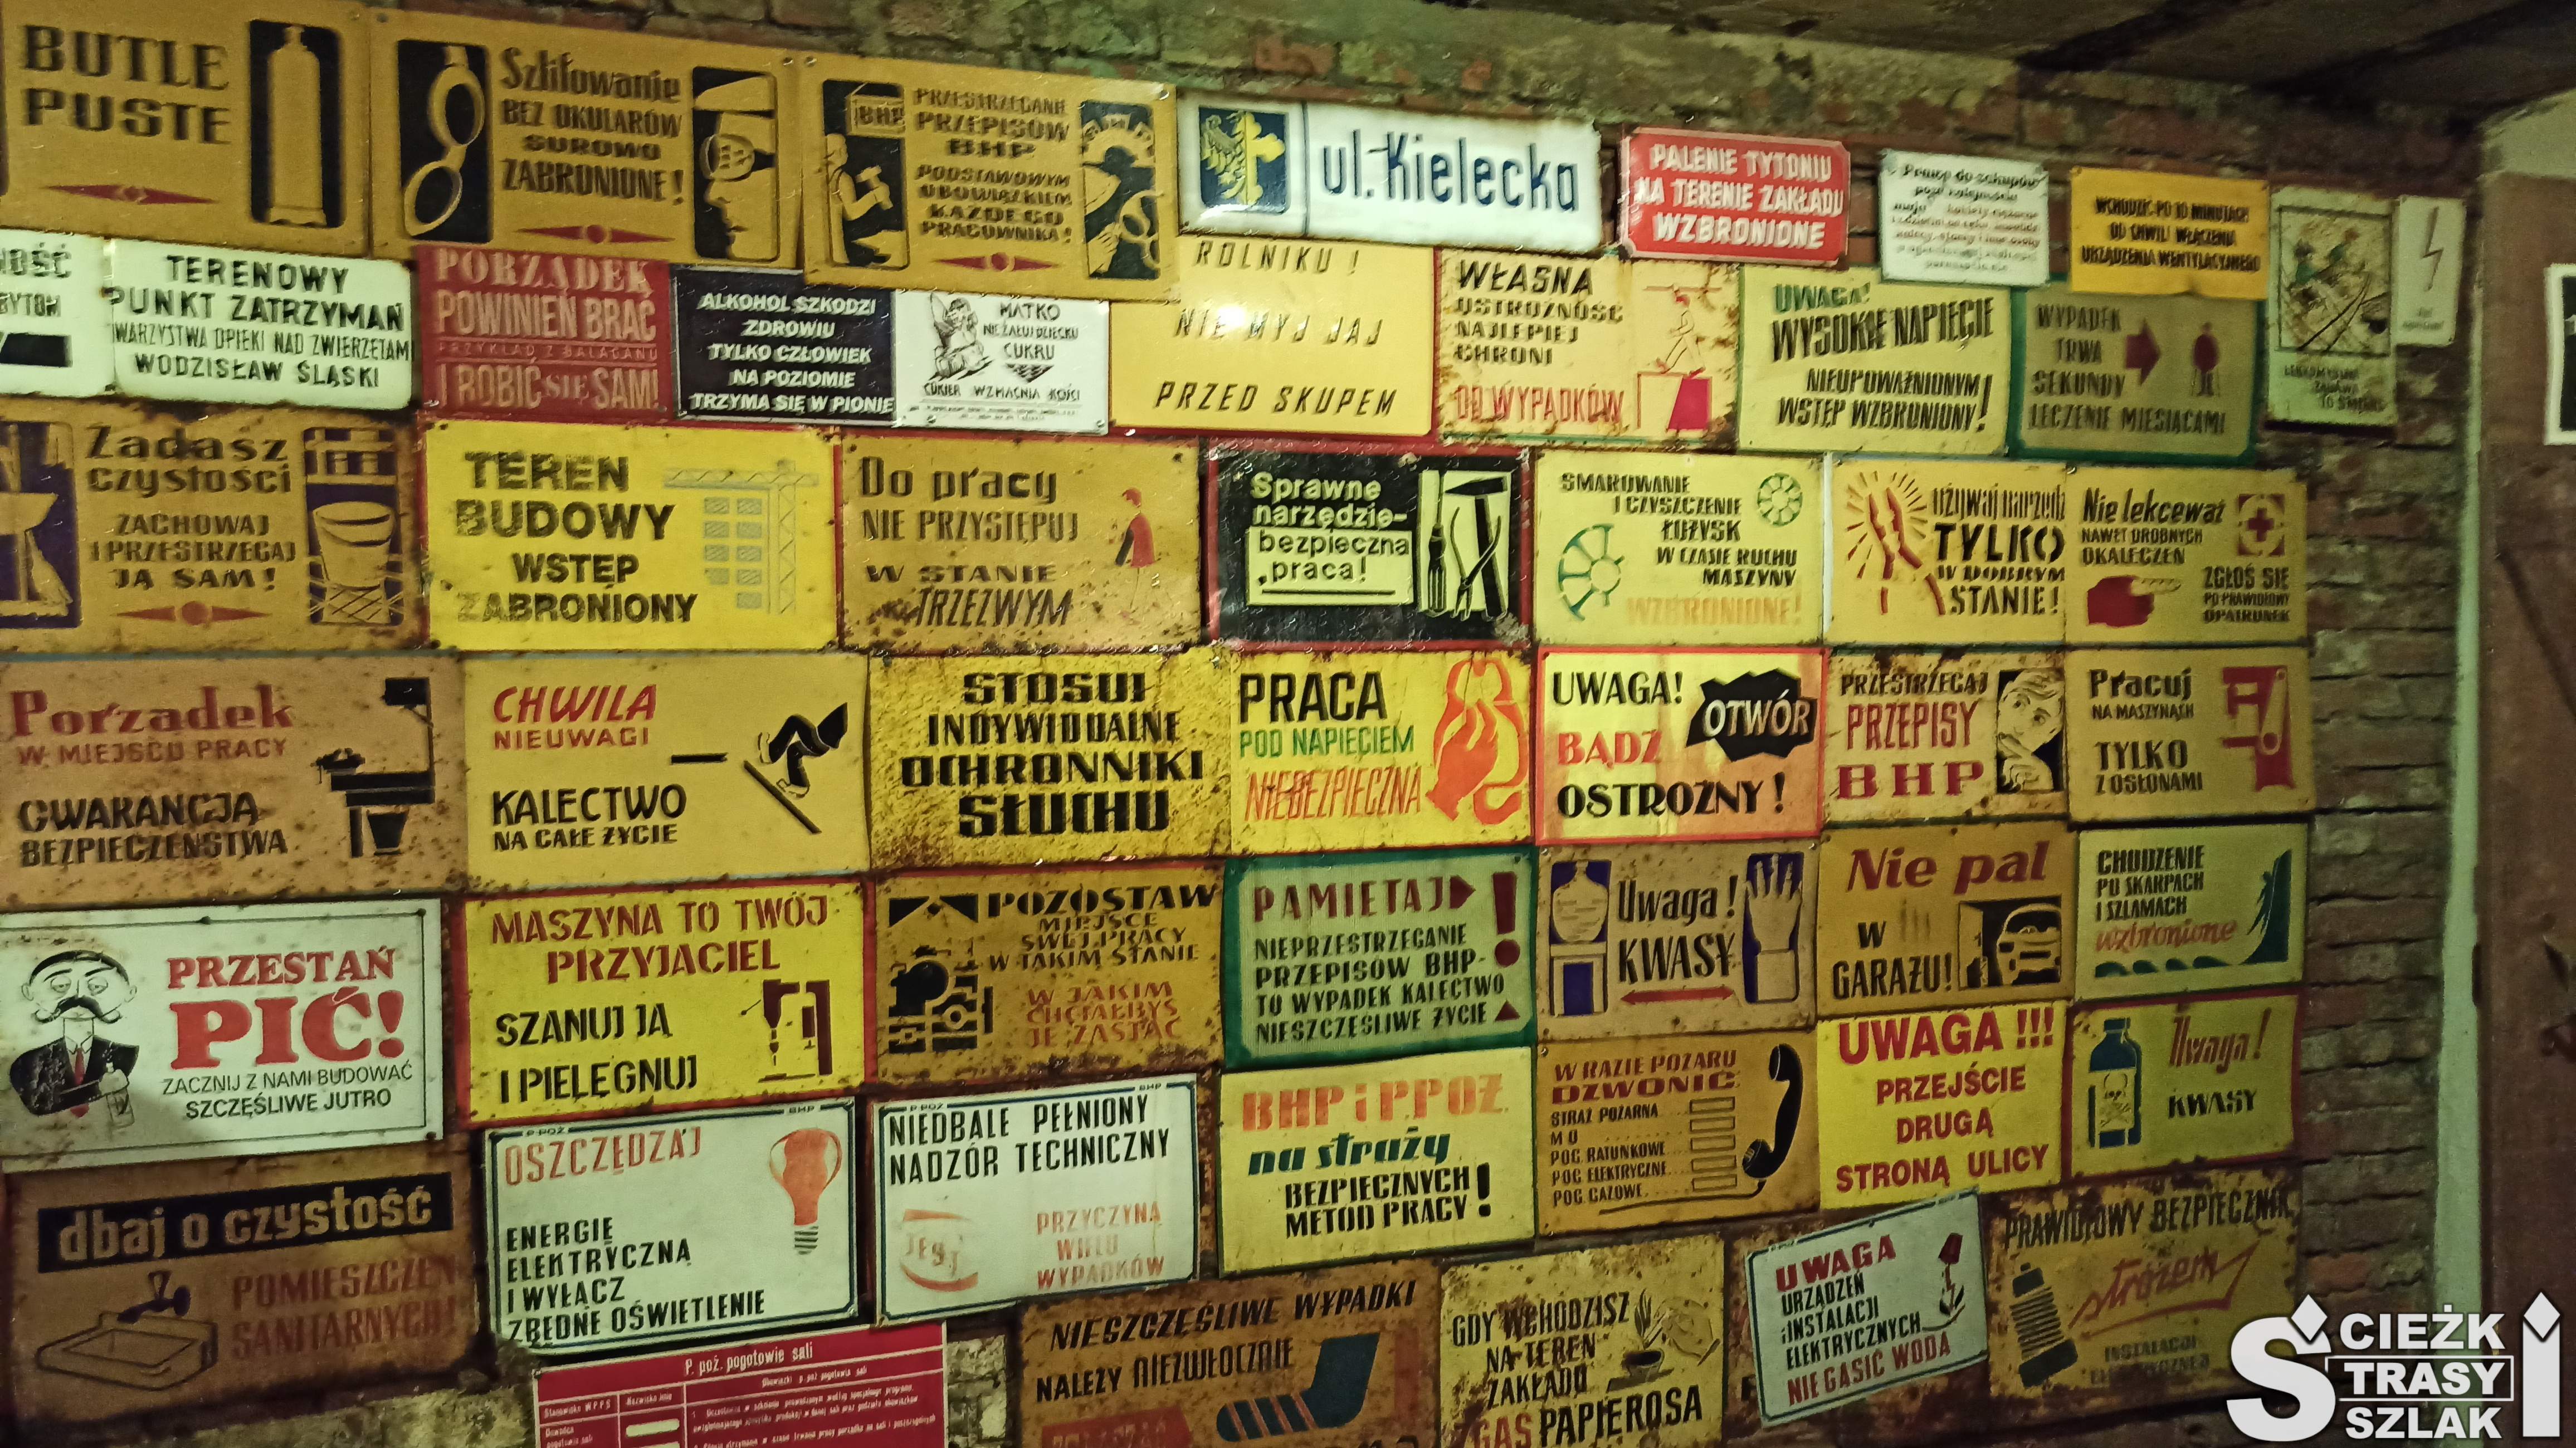 Ściana w kopalni ze śmiesznymi tabliczkami BHP, przestrogami i apelami z czasów PRLu należąca do muzeum